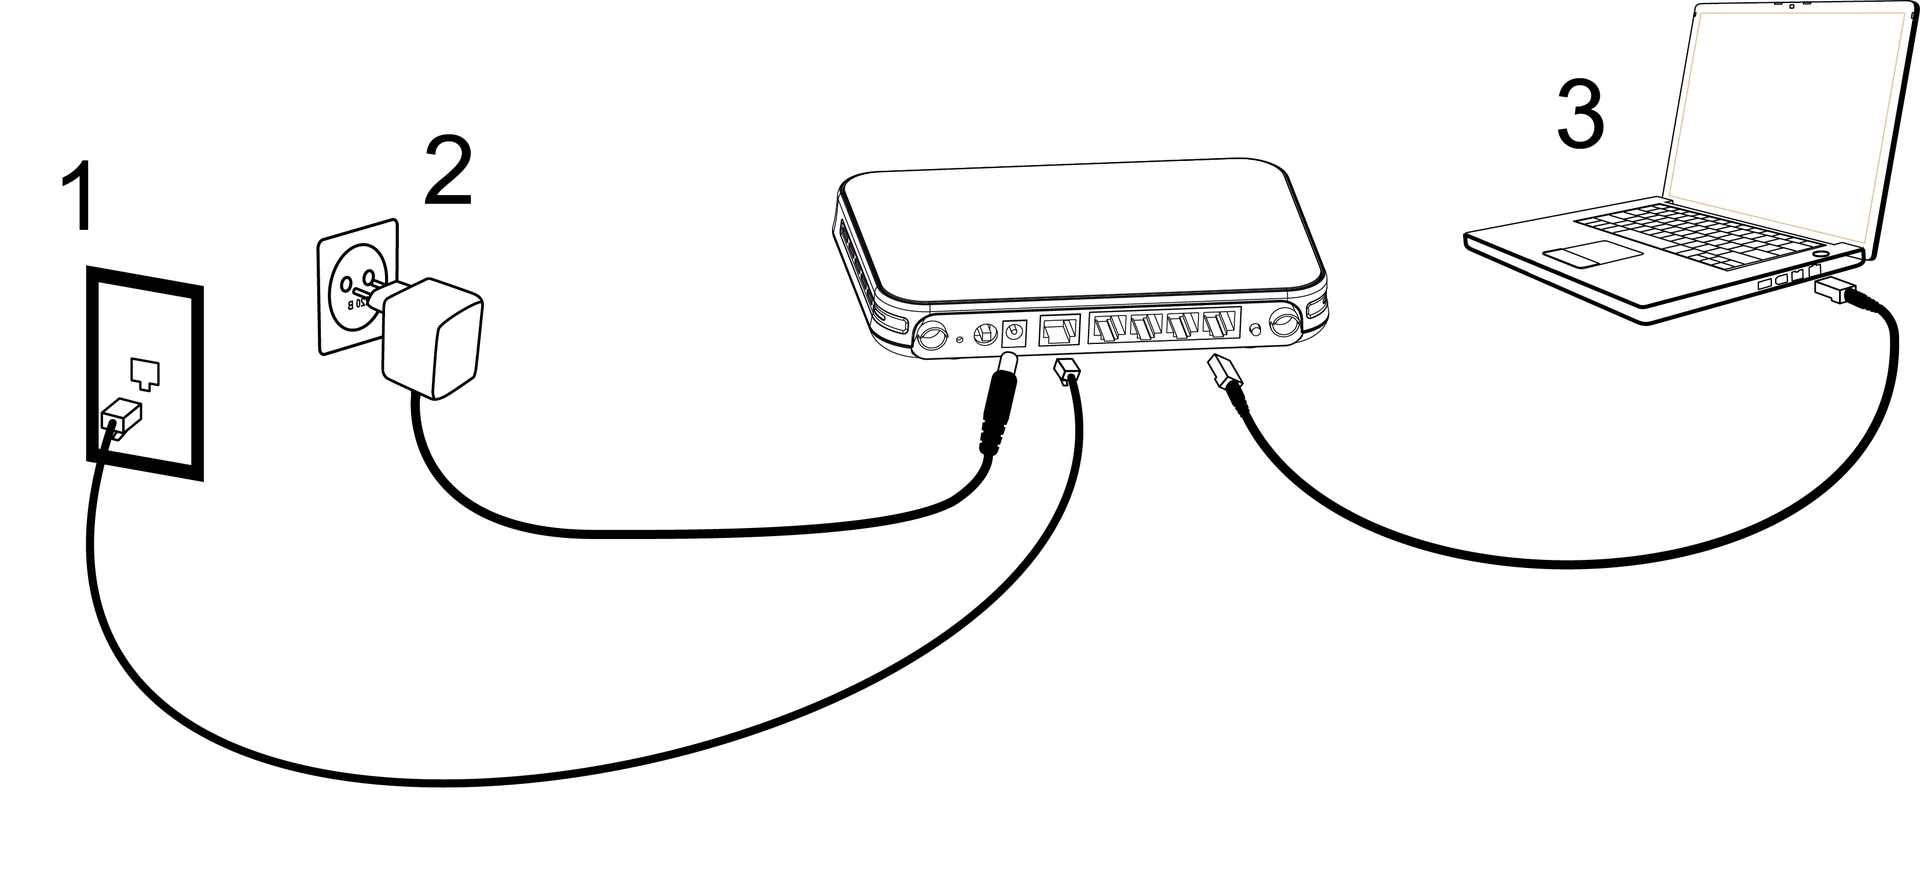 Как подключить и настроить wi-fi роутер ростелеком — пошаговая инструкция